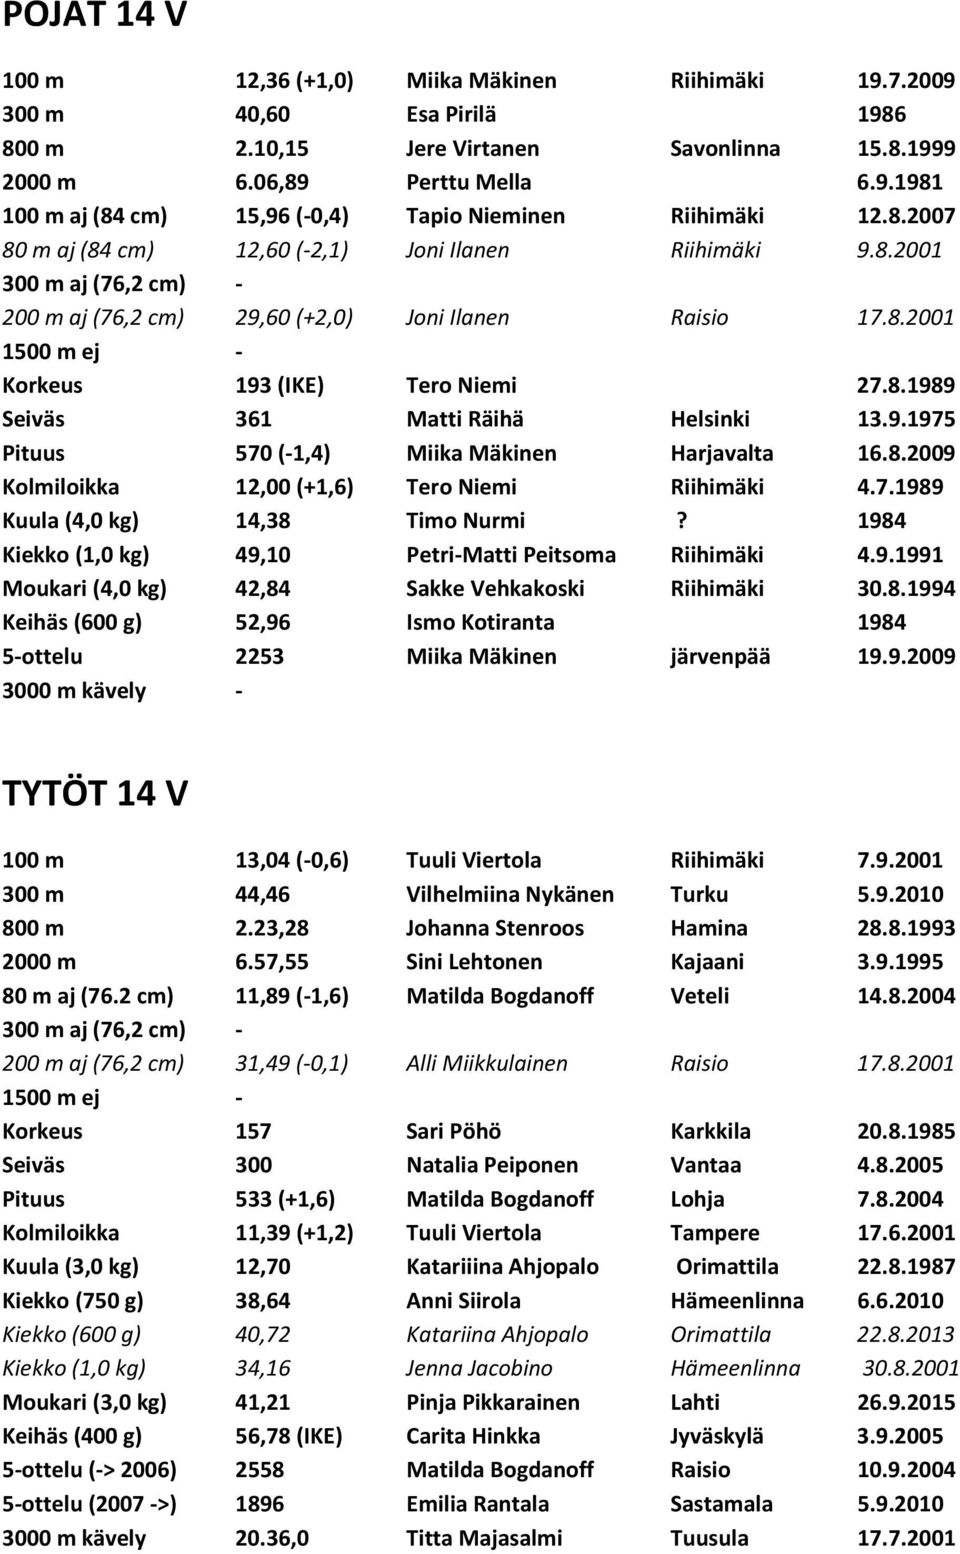 9.1975 Pituus 570 (-1,4) Miika Mäkinen Harjavalta 16.8.2009 Kolmiloikka 12,00 (+1,6) Tero Niemi Riihimäki 4.7.1989 Kuula (4,0 kg) 14,38 Timo Nurmi?